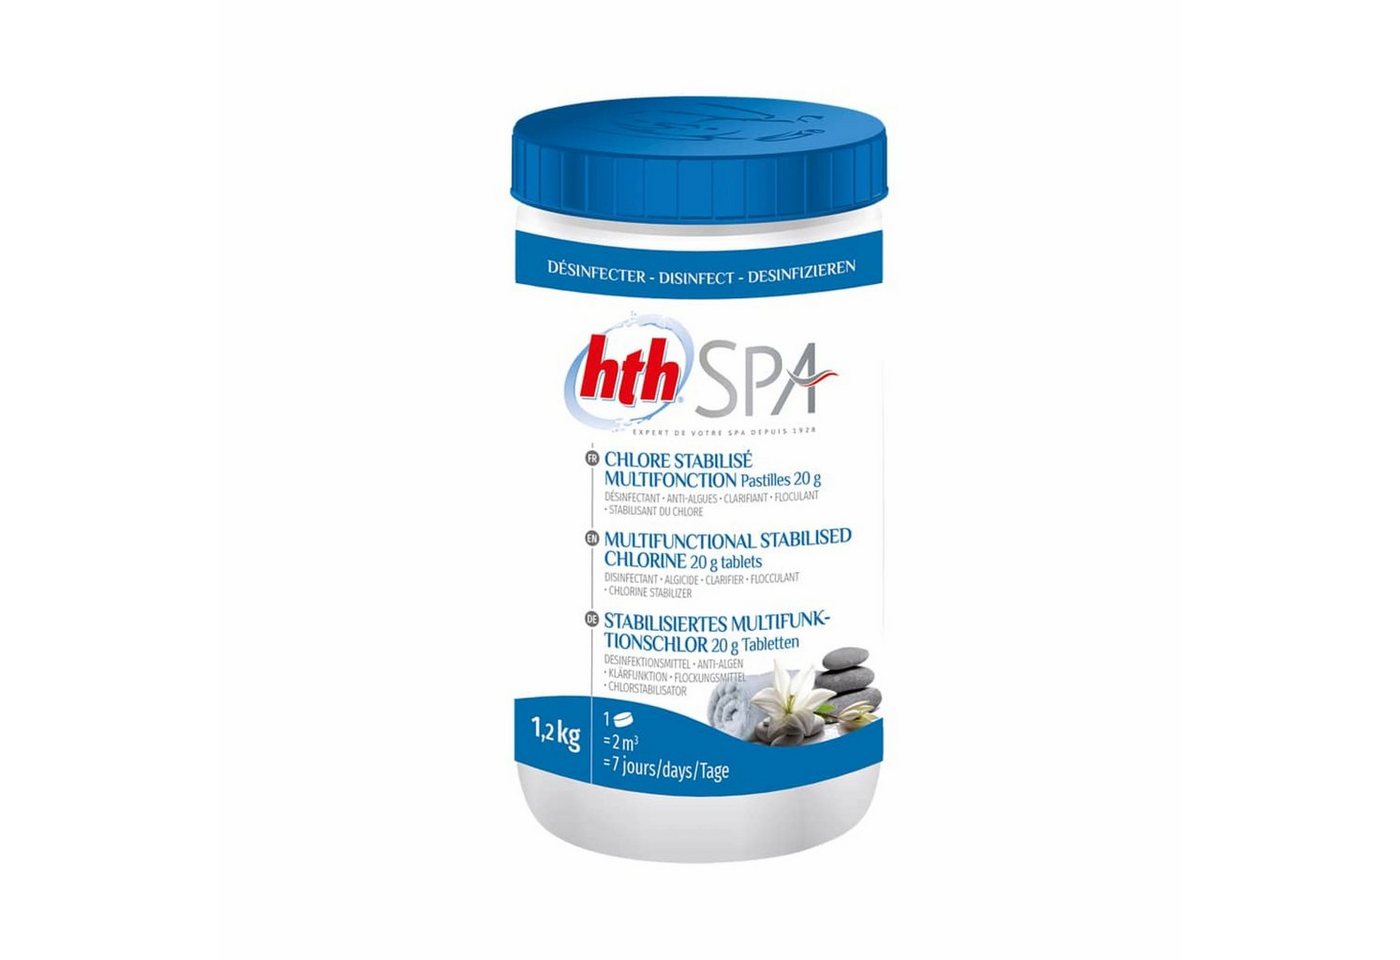 HTH Poolpflege hth Spa Stabilisiertes Multifunktionschlor Tabletten 1,2 Kg Chlor von HTH